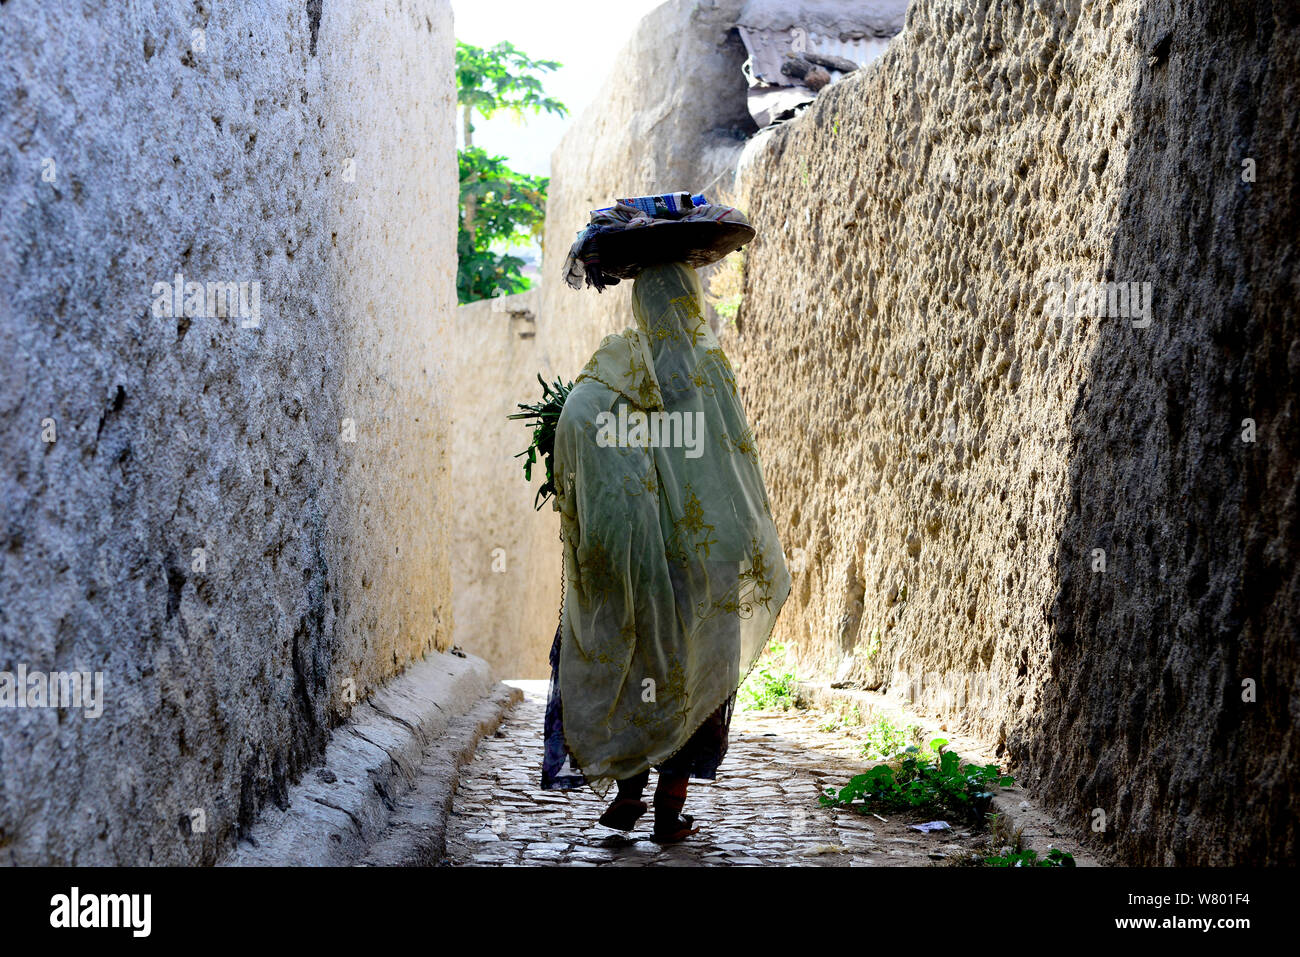 Femme musulmane marcher dans les rues étroites, Harar, une importante ville sainte dans la foi islamique, UNESCO World Heritage Site. L'Éthiopie, Novembre 2014 Banque D'Images